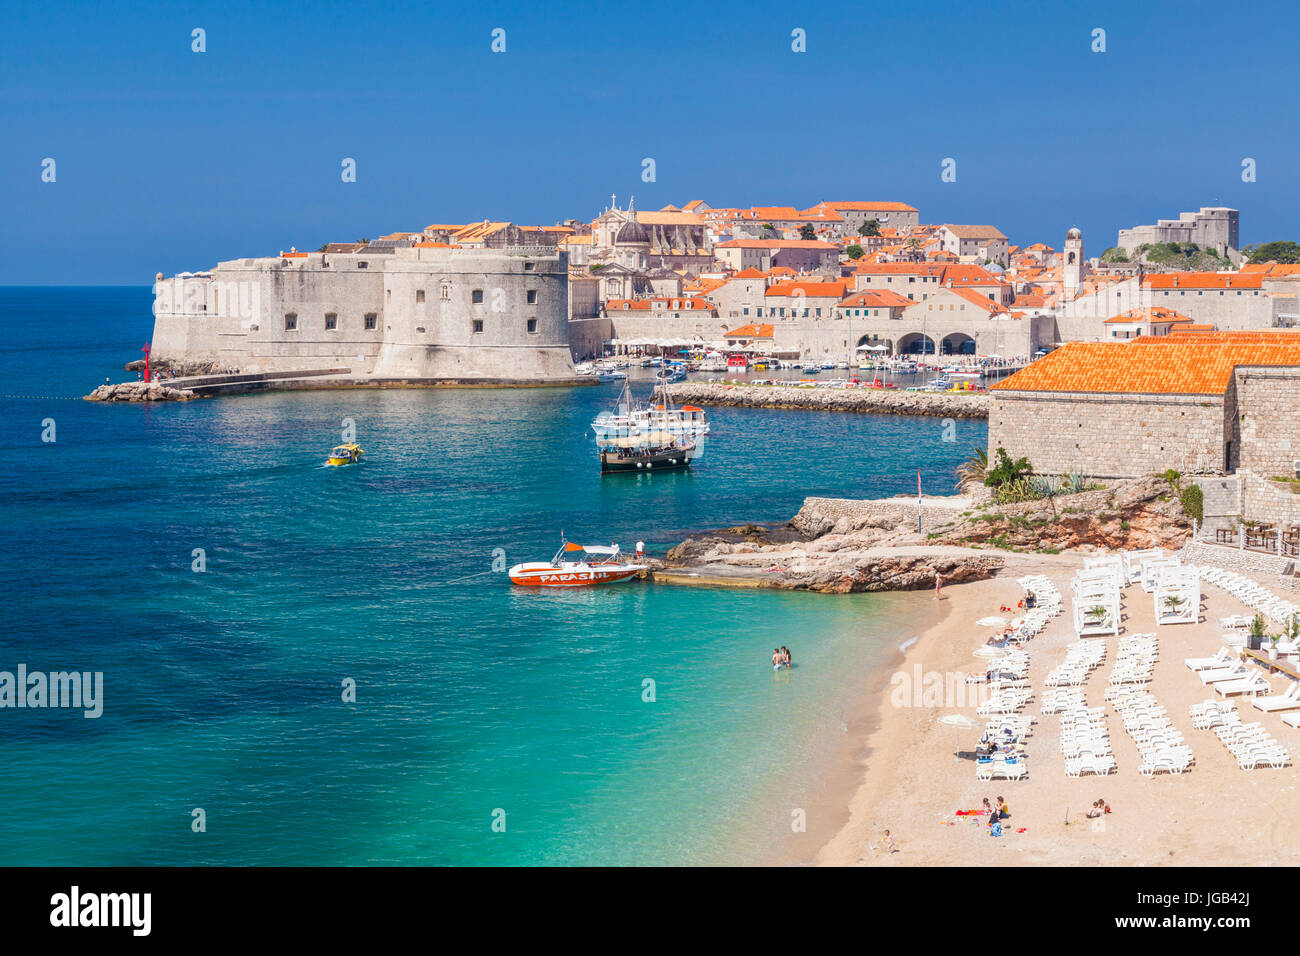 Persone vacanzieri i turisti a prendere il sole sulla spiaggia di Banje banje Dubrovnik Croazia costa dalmata Dubrovnik riviera mare Adriatico Riviera adriatica Foto Stock